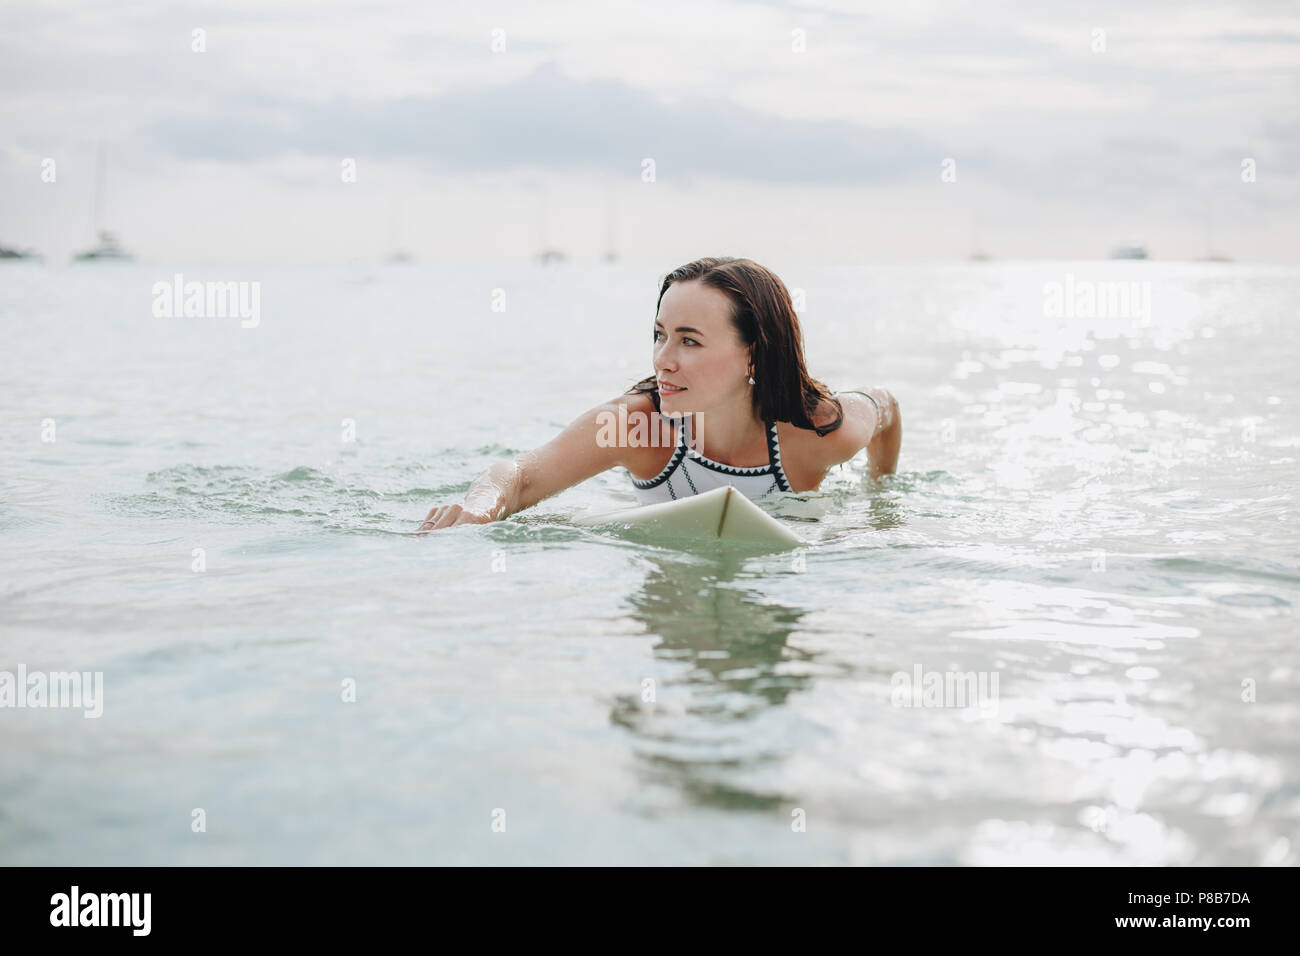 Une belle fille sur une planche de surf dans l'eau Banque D'Images